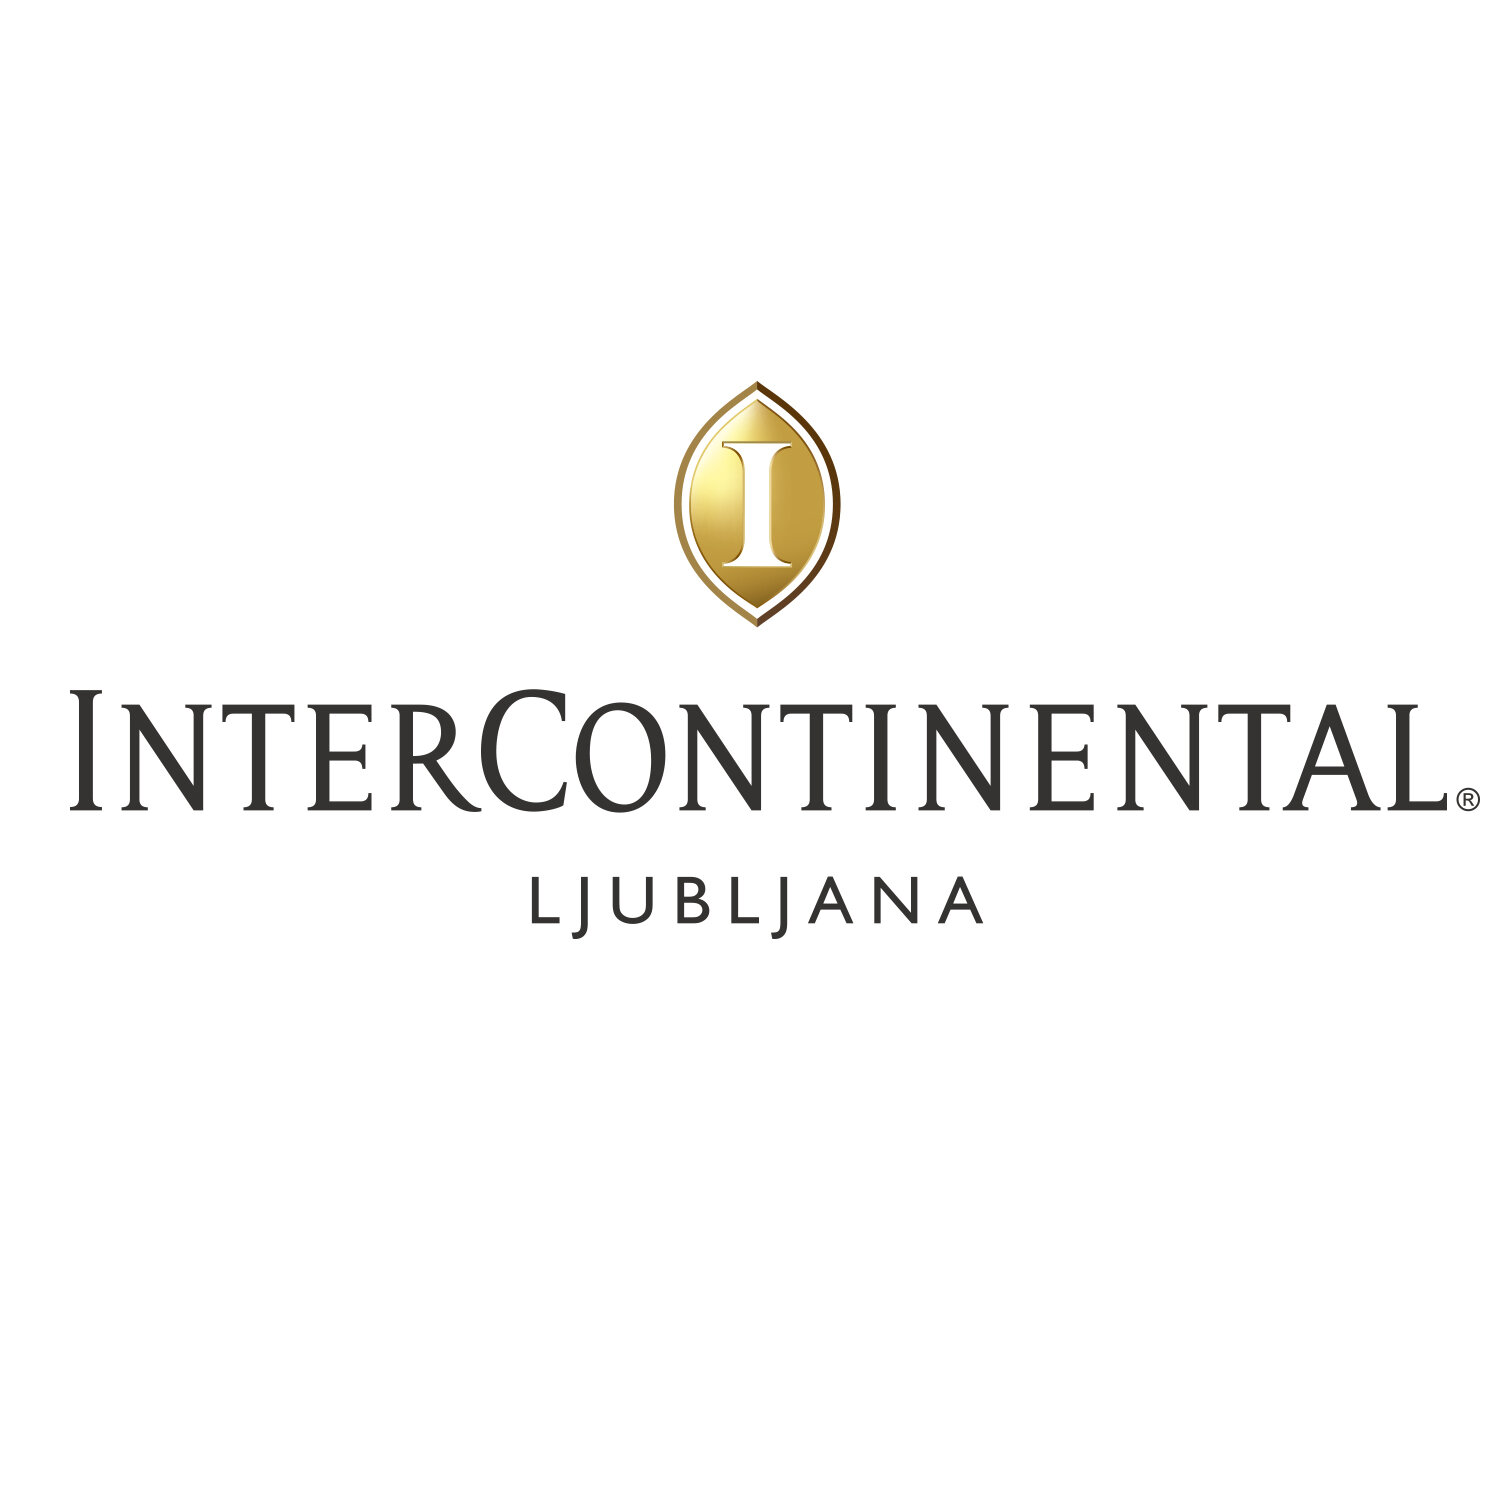  InterContinental Ljubljana